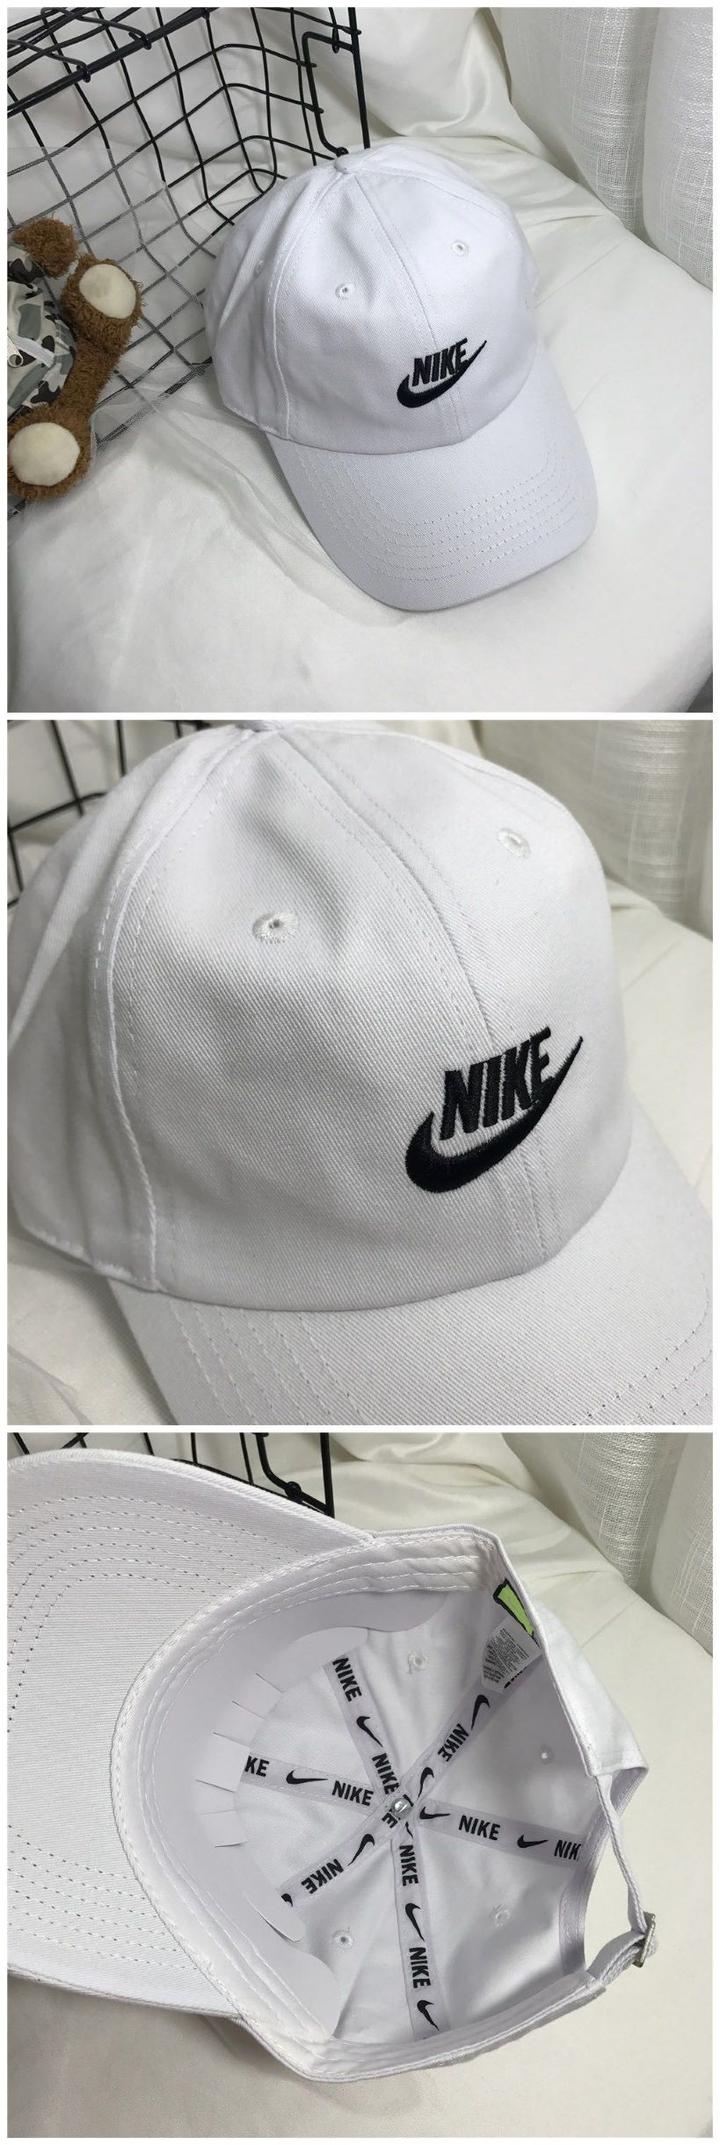 【一个优惠 福利】五颜六色的nike棒球帽